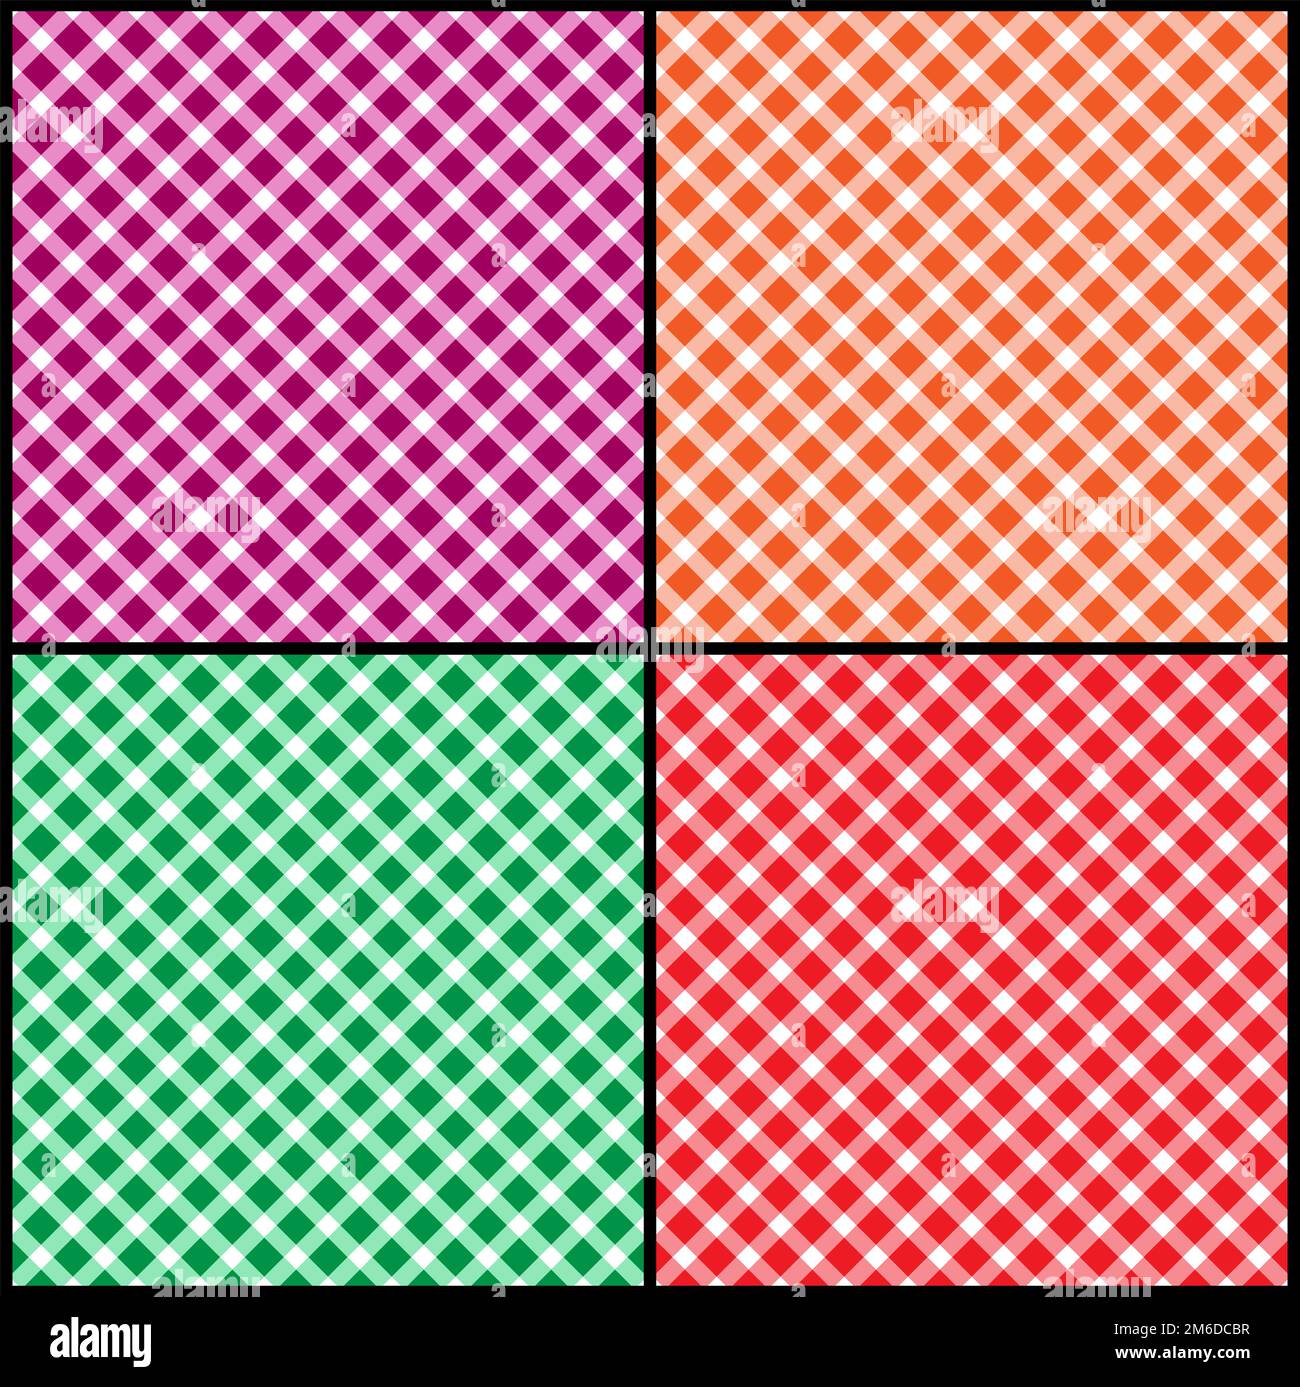 Ein Satz nahtloser diagonaler Muster aus Quadraten, Diamanten. Zufällige Farben. Stockfoto